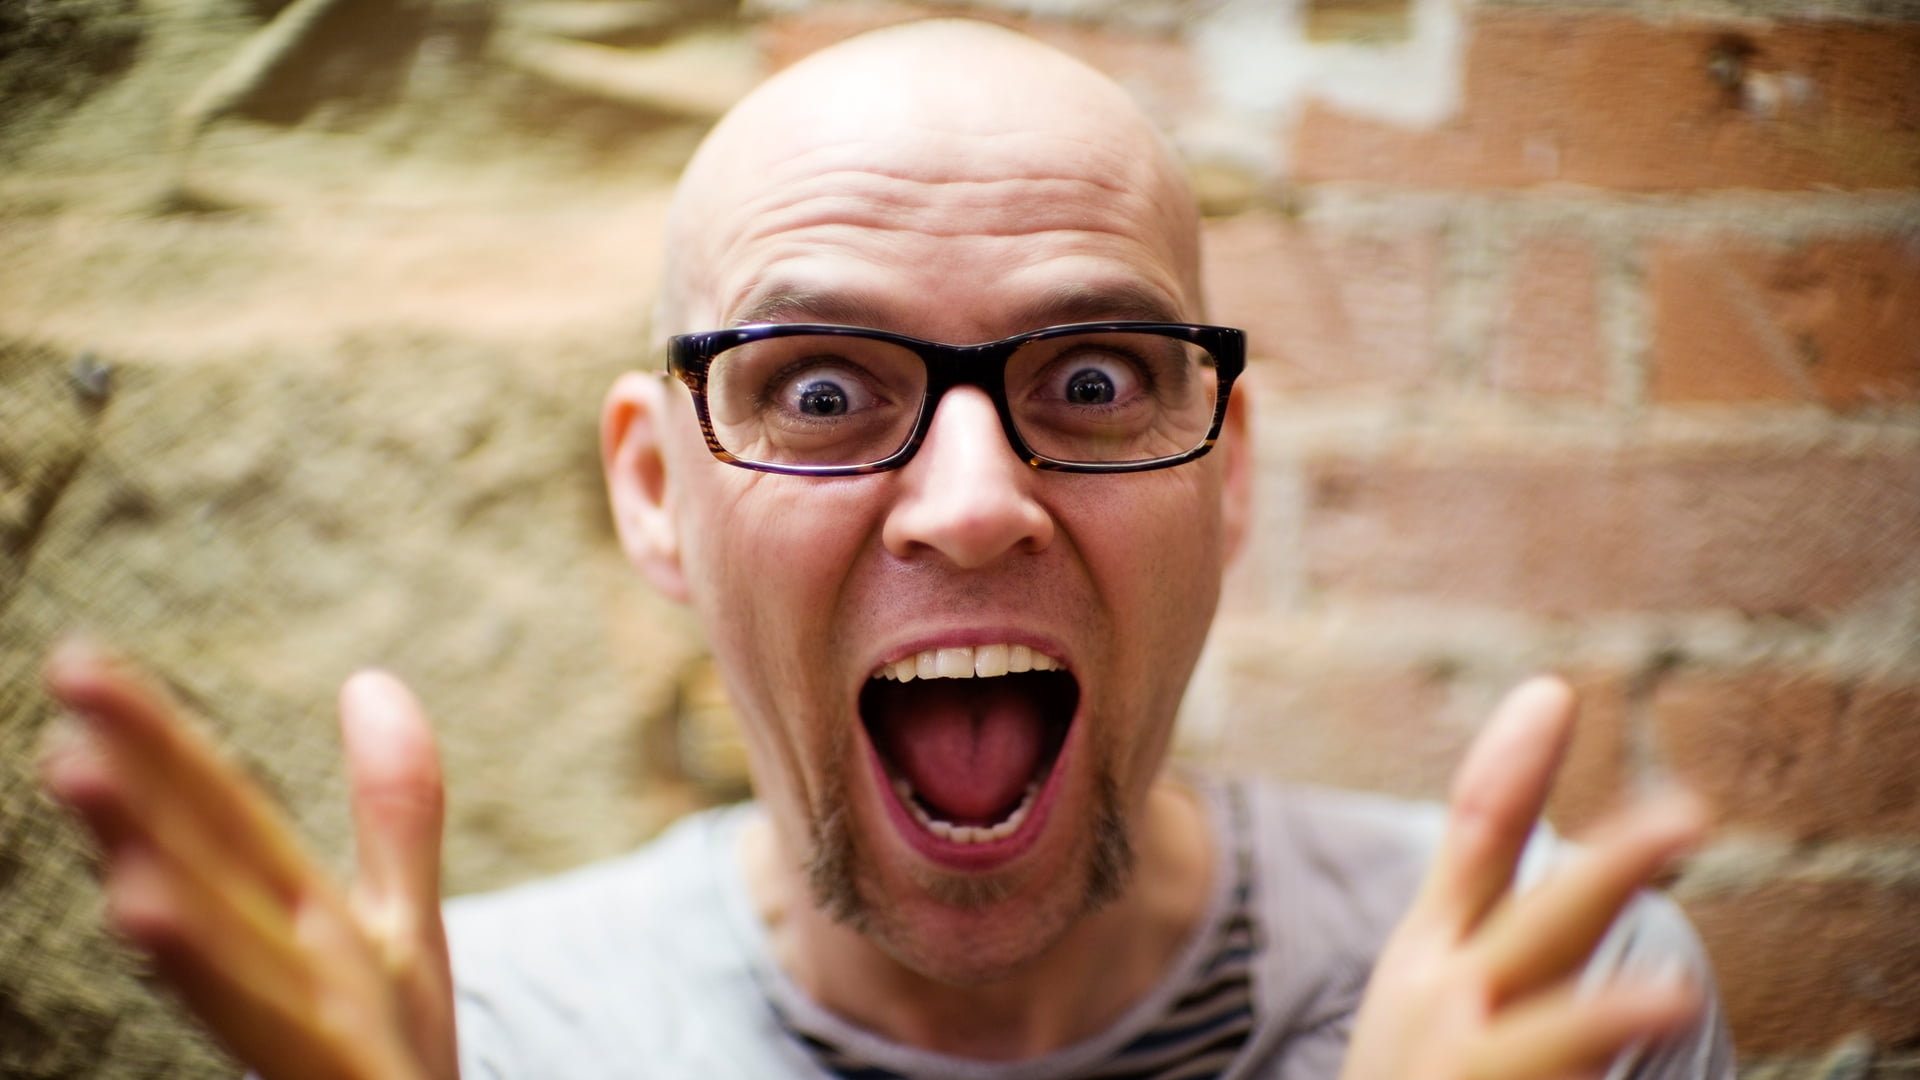 Man wearing eyeglasses showing surprised expression HD wallpaper ...